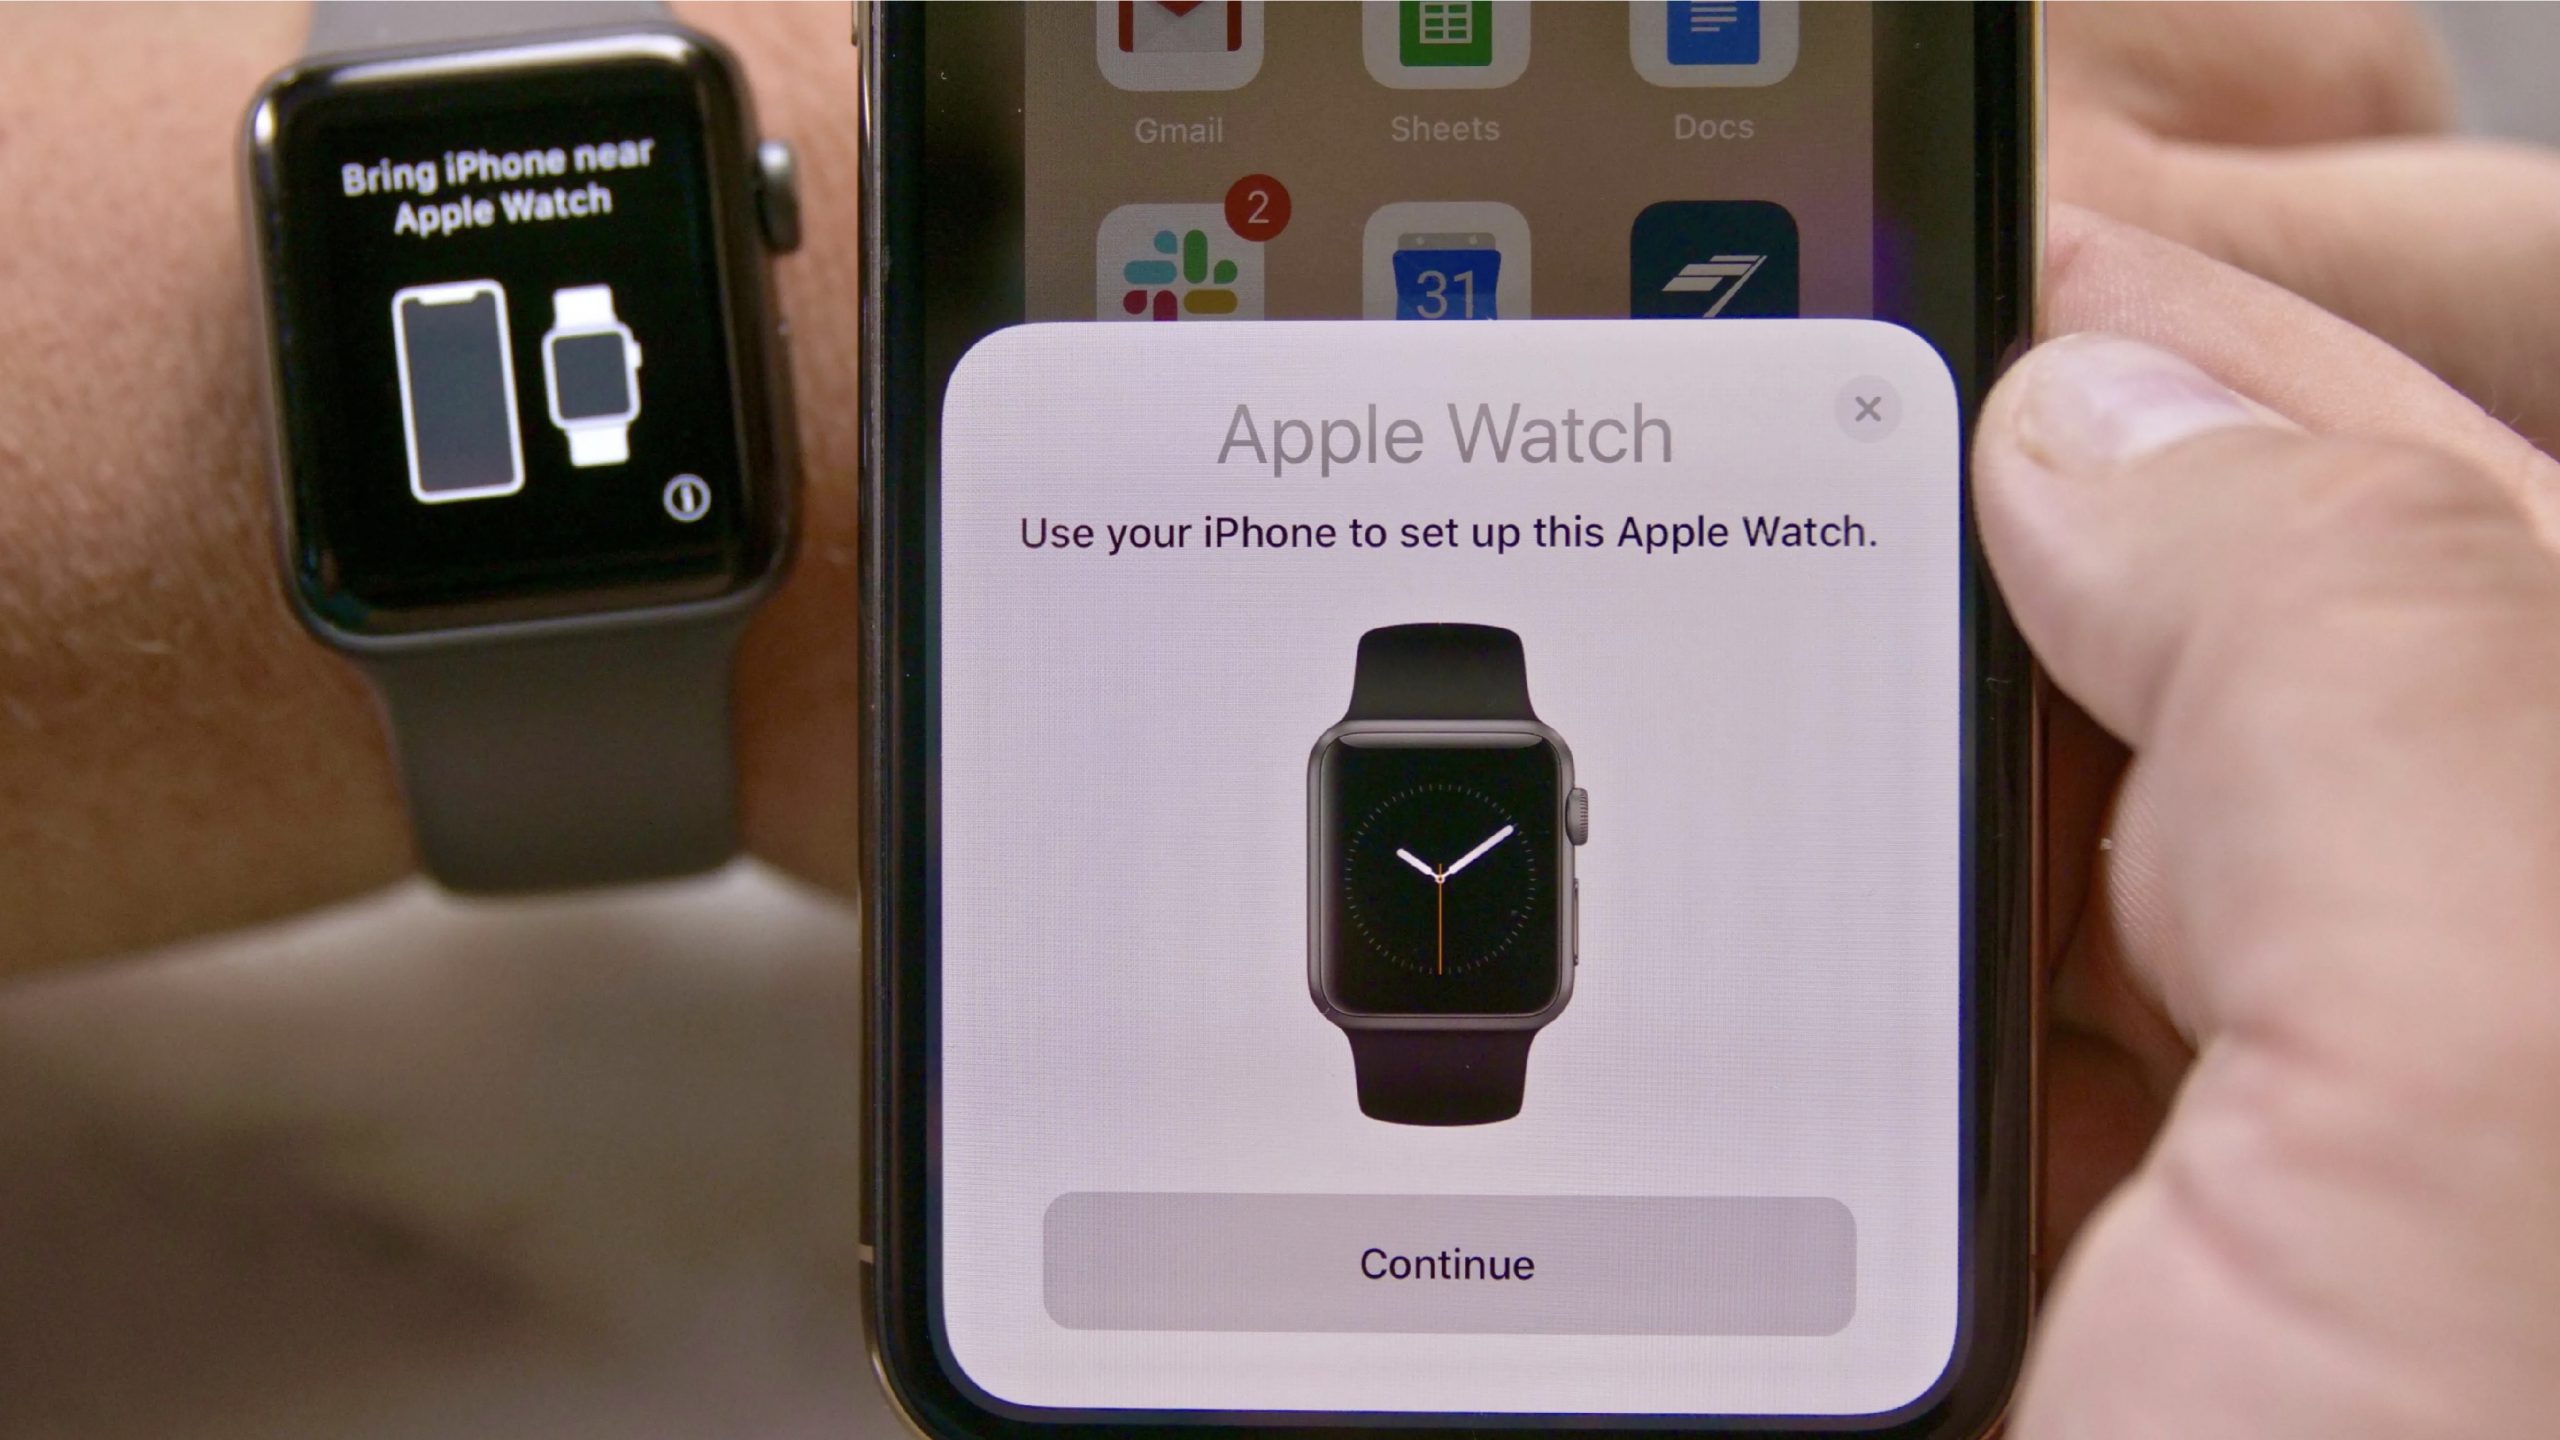 Ghép đôi Apple Watch là một cách tuyệt vời để kết nối và tạo ra sự gắn kết giữa bạn và đối tác của mình. Với một ứng dụng cung cấp bởi Apple, bạn sẽ có thể theo dõi và chia sẻ chiếc đồng hồ thông minh của mình với người đồng hành yêu thích của mình. Dù cho bạn đang ở đâu, bạn sẽ luôn ở gần nhau nhờ Apple Watch.